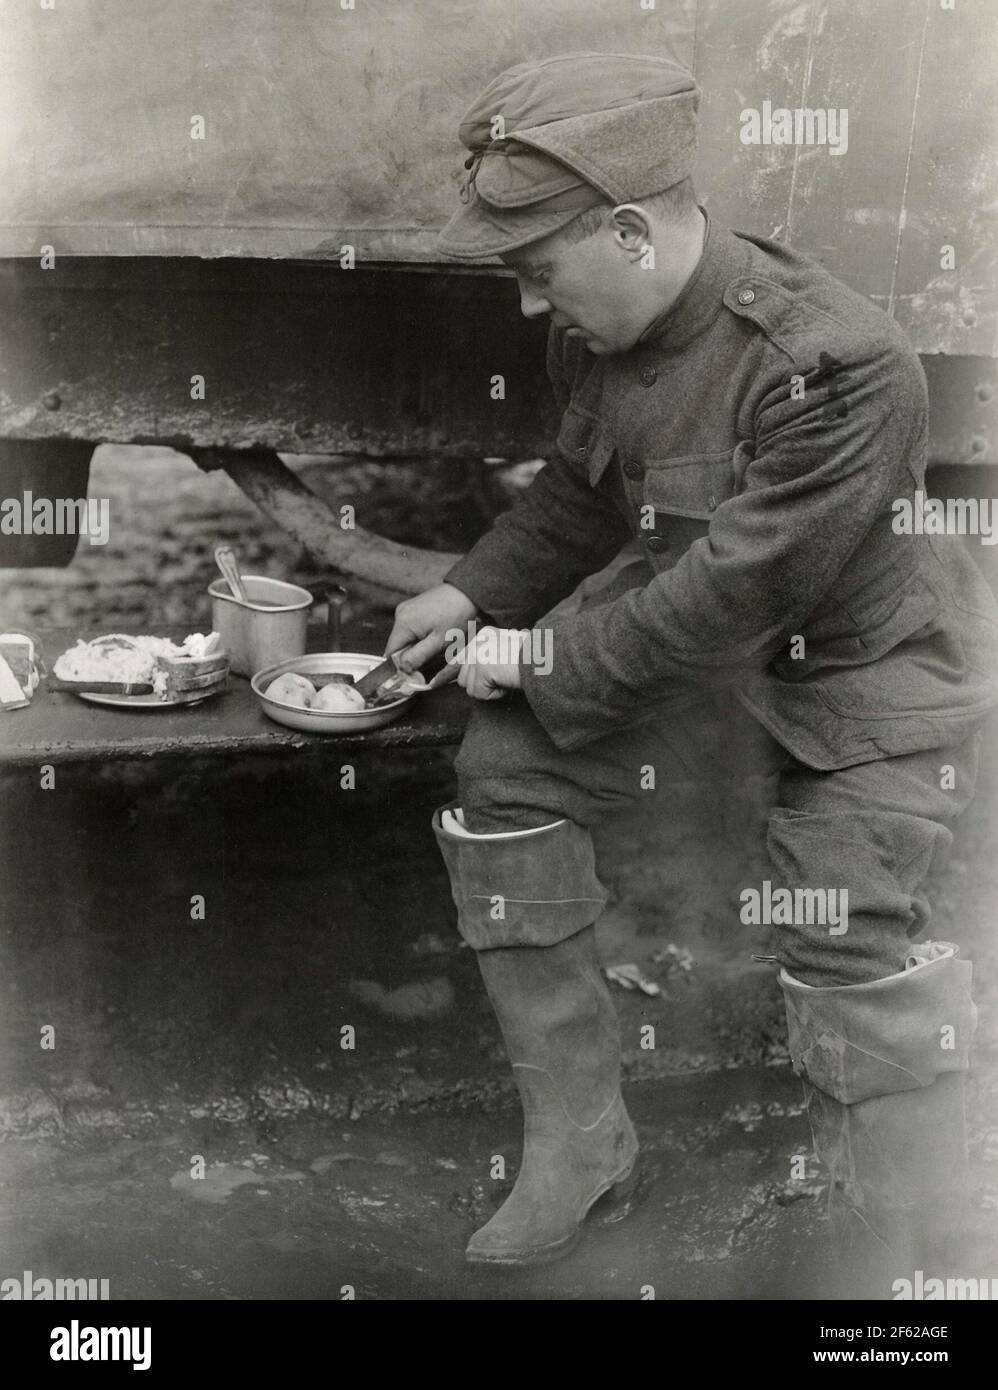 Thanksgiving Dinner, First World War, 1917 Stock Photo